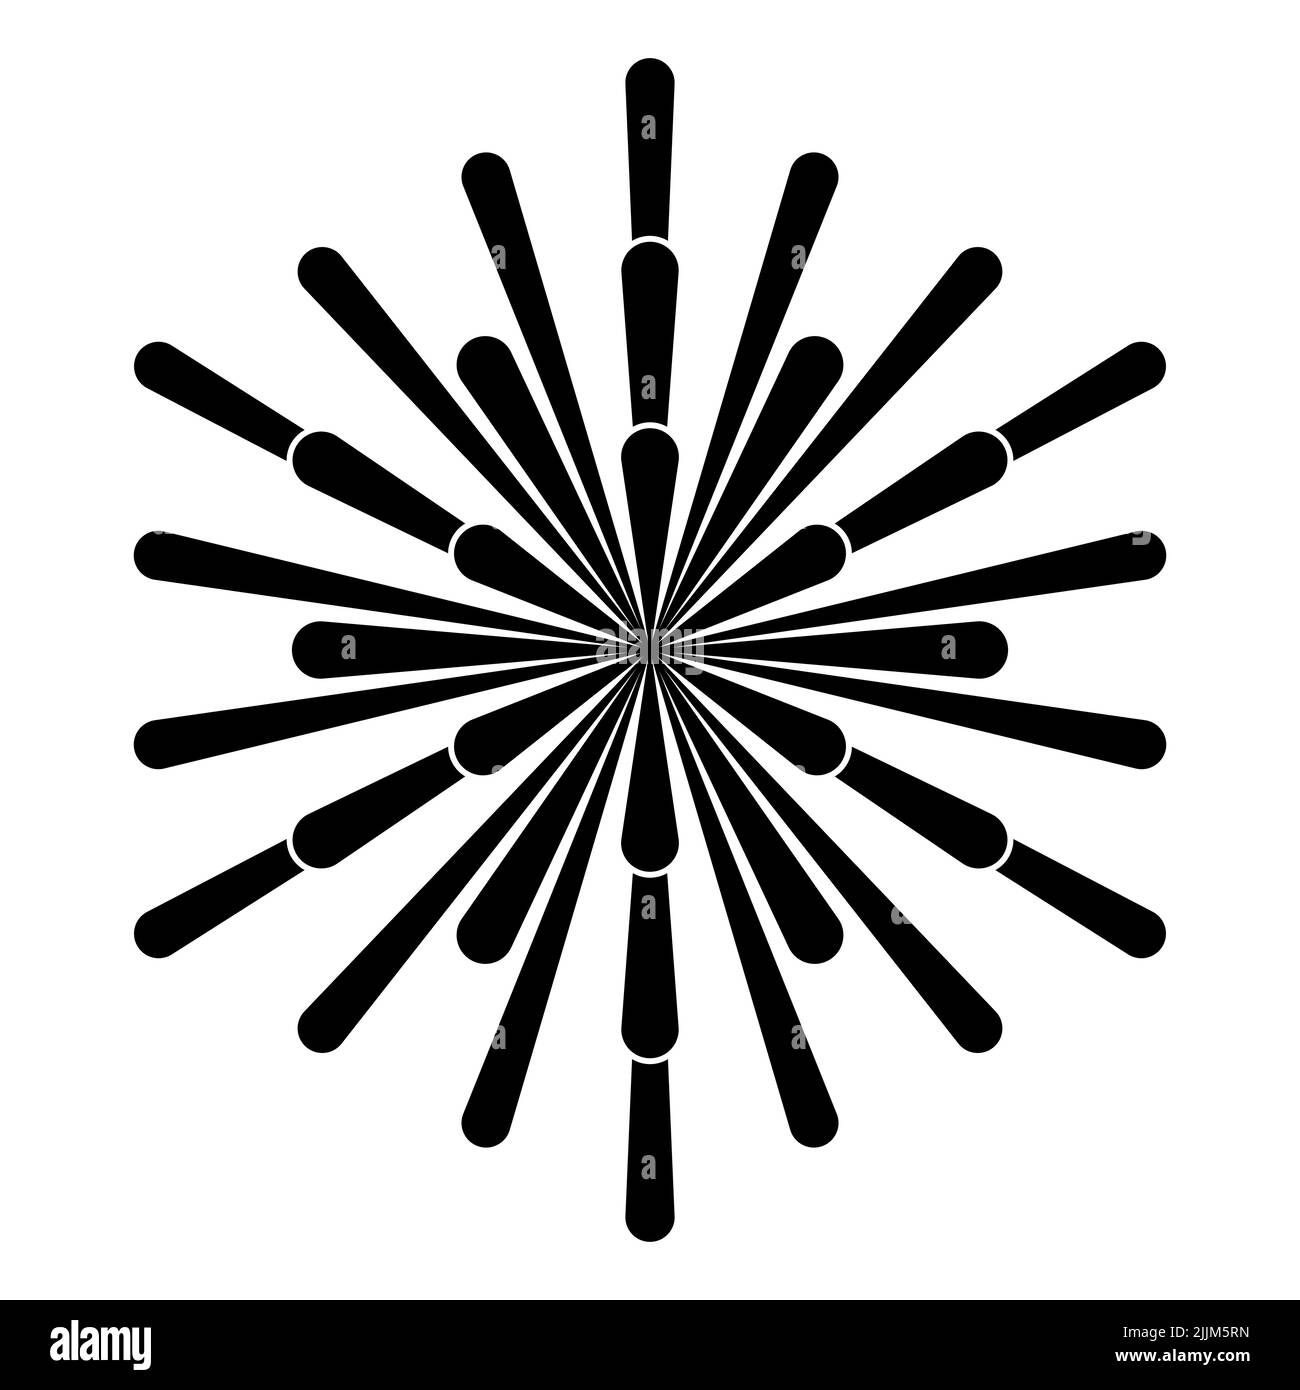 Rayos del sol, símbolo derivado de puntos de intersección de círculos superpuestos de una Flor de la Vida, conectados con líneas, que aparecen como rayos de sol. Foto de stock